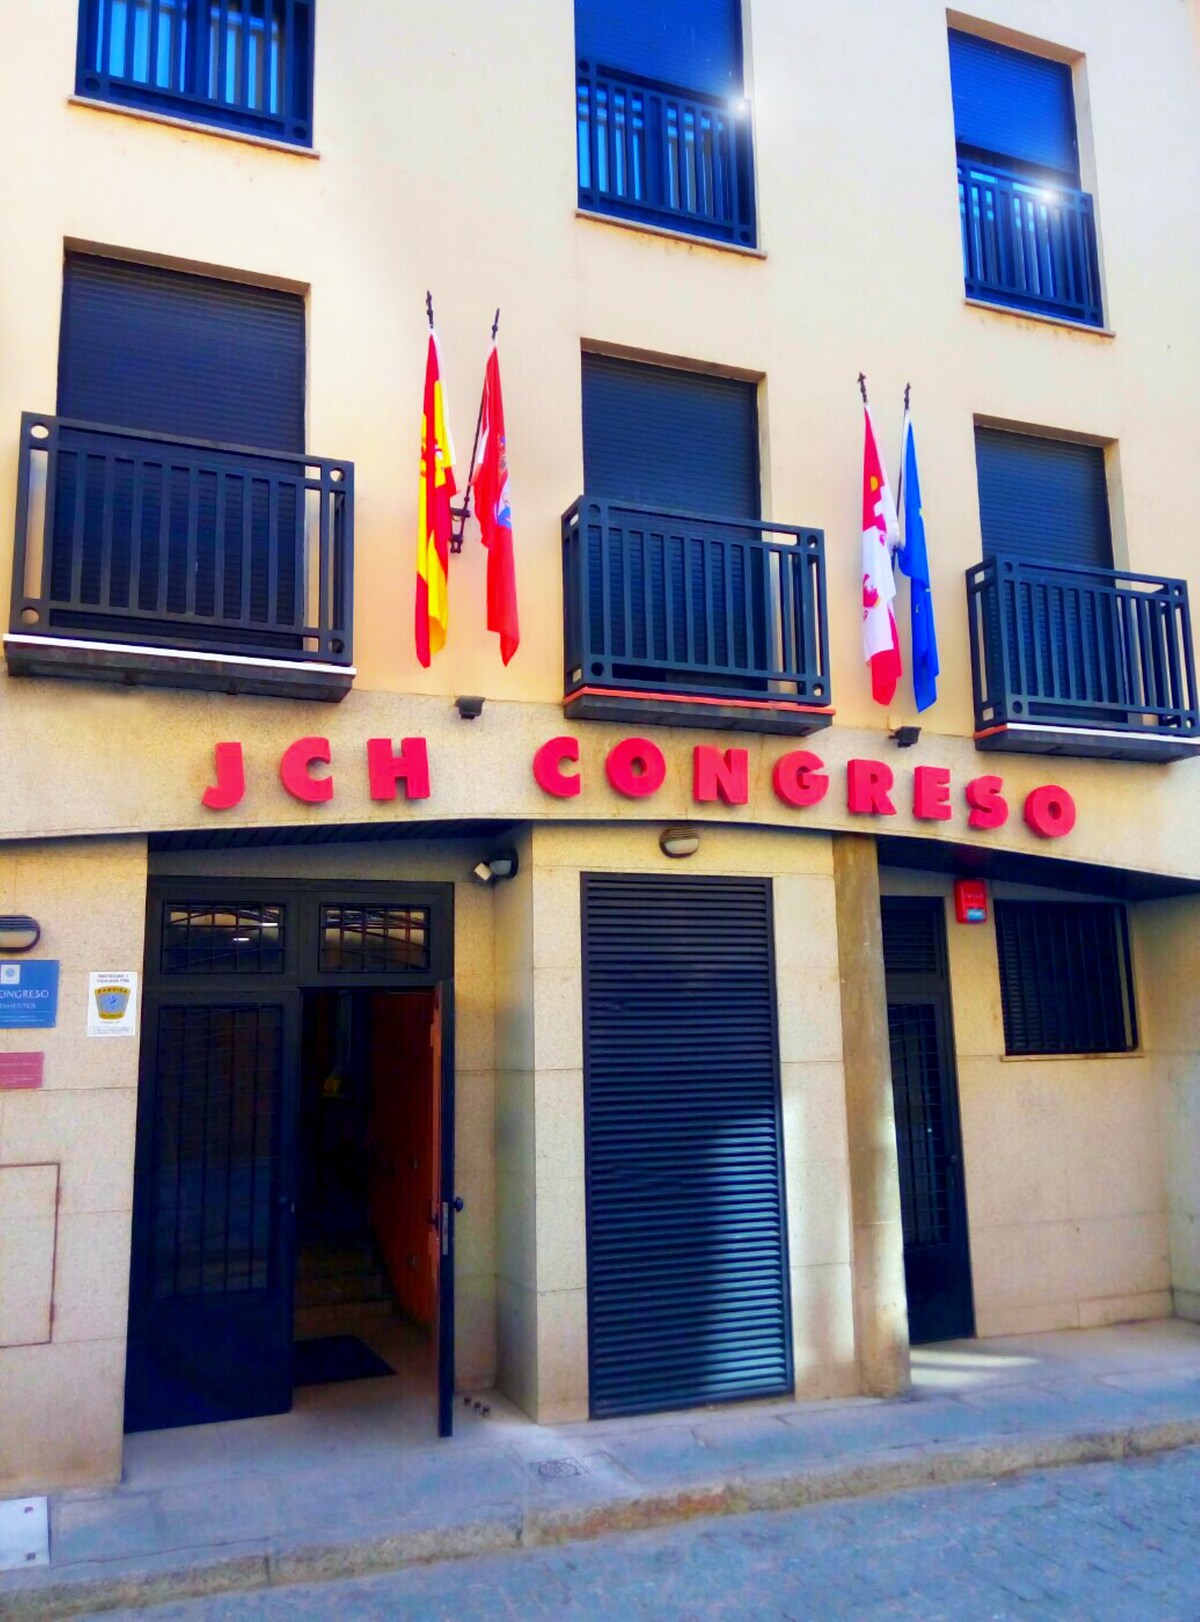 Apartamento para 3 personas en centro de Salamanca